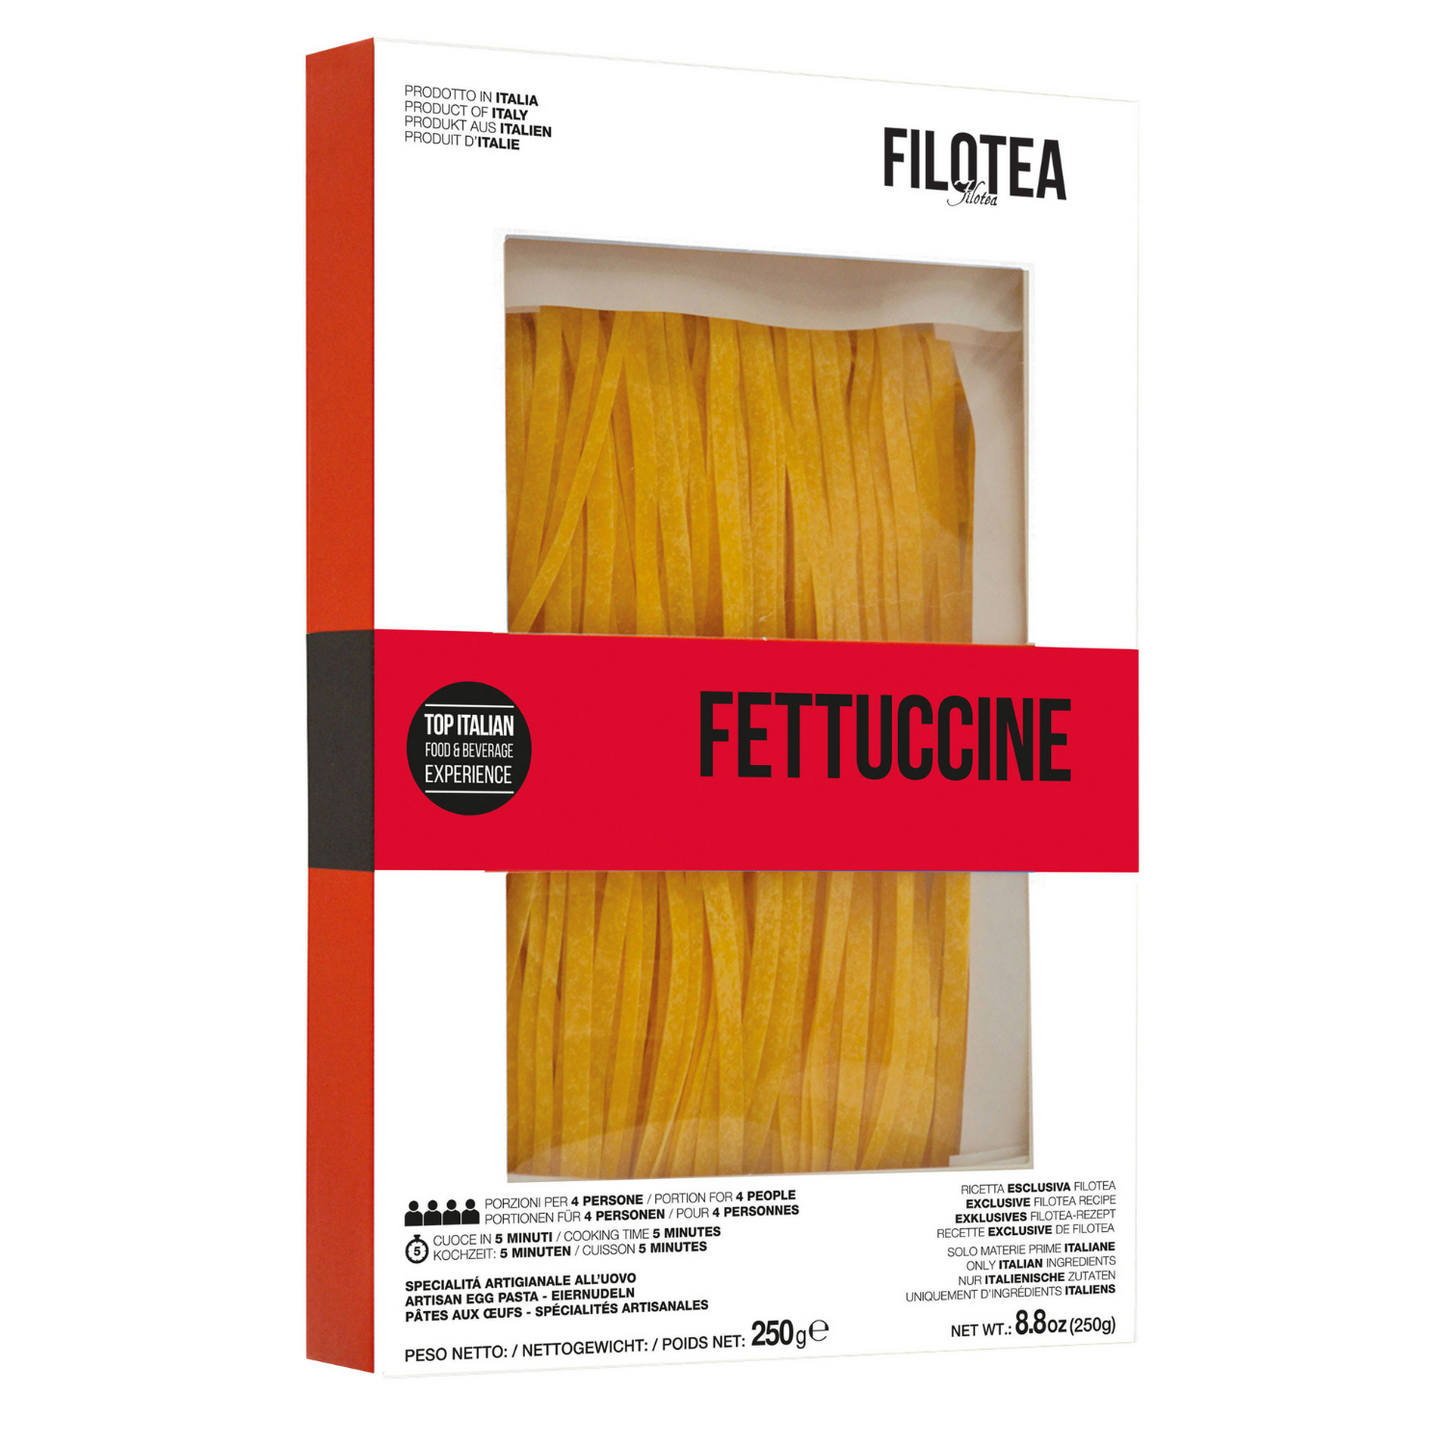 Filotea Pasta Busta 02 - GIFT BOX - 4 x 250gr